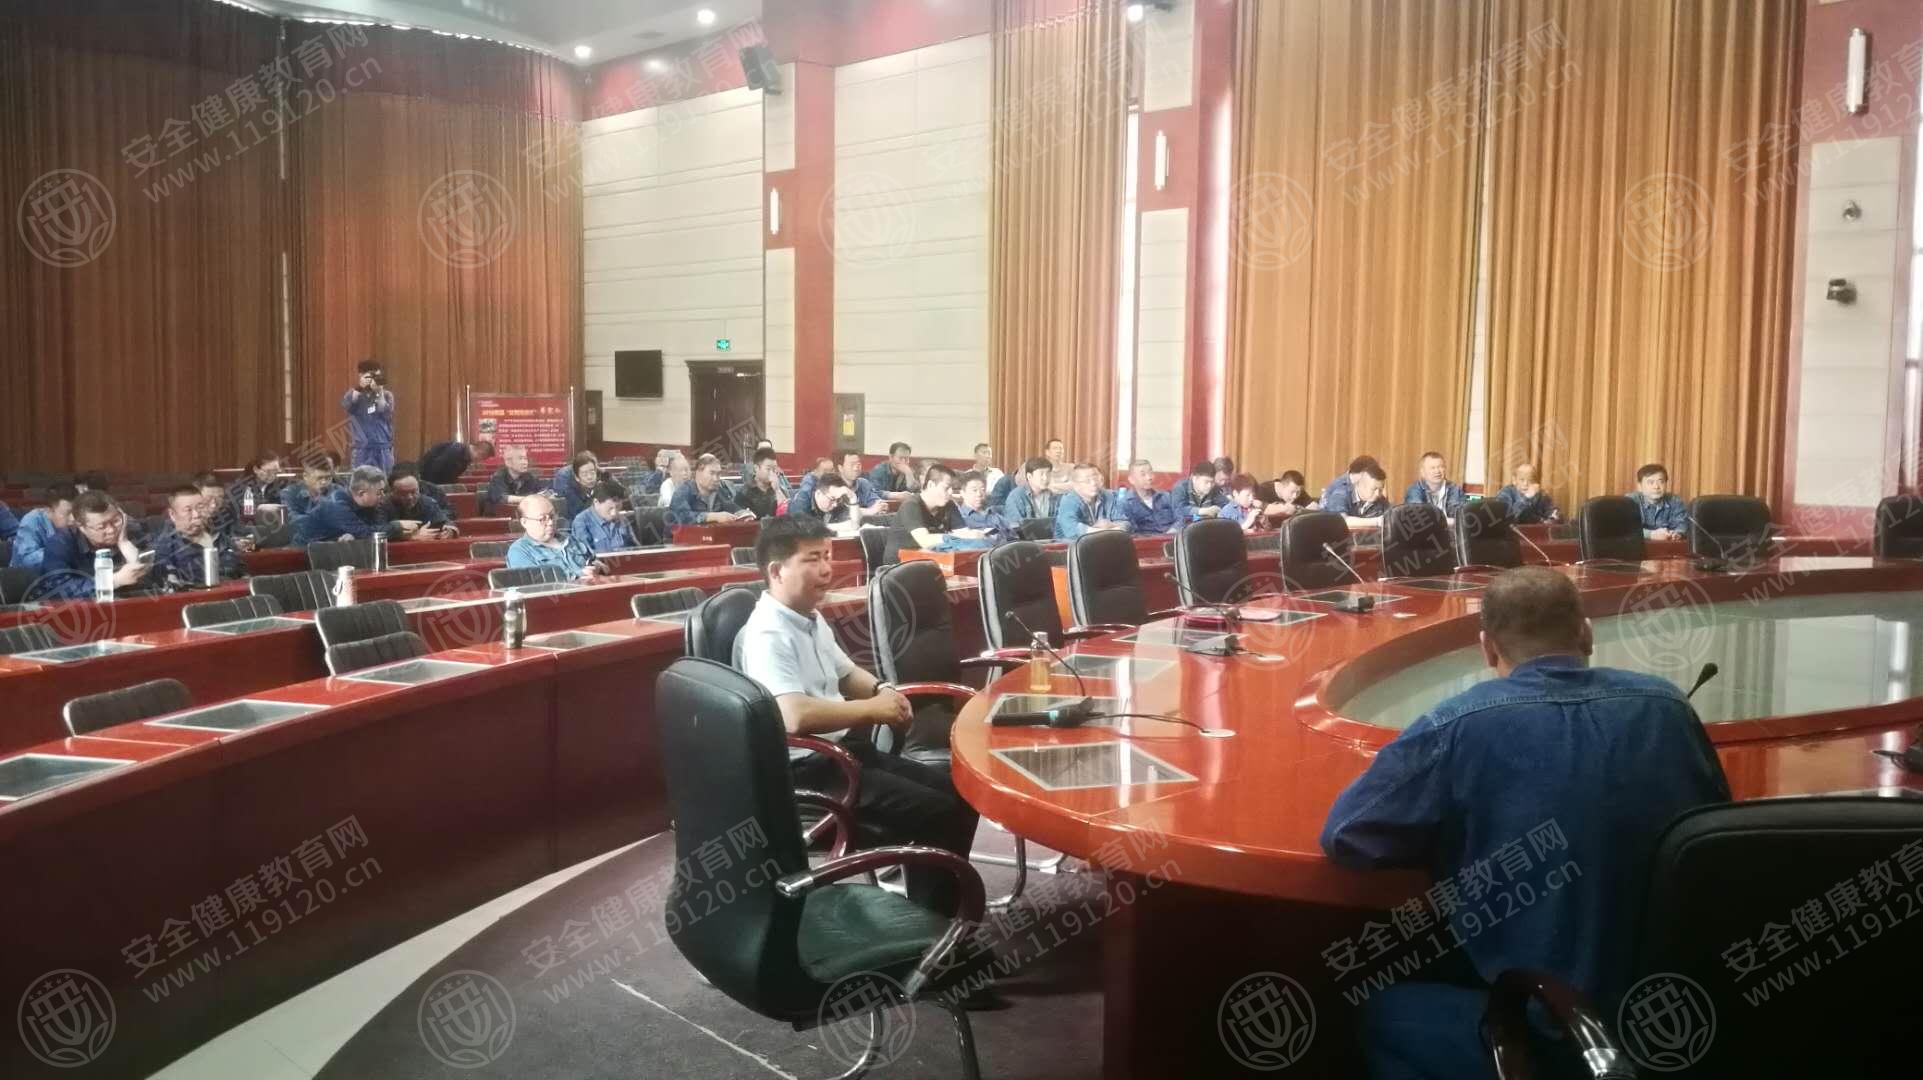 天津军粮城发电有限公司举办健康知识讲座